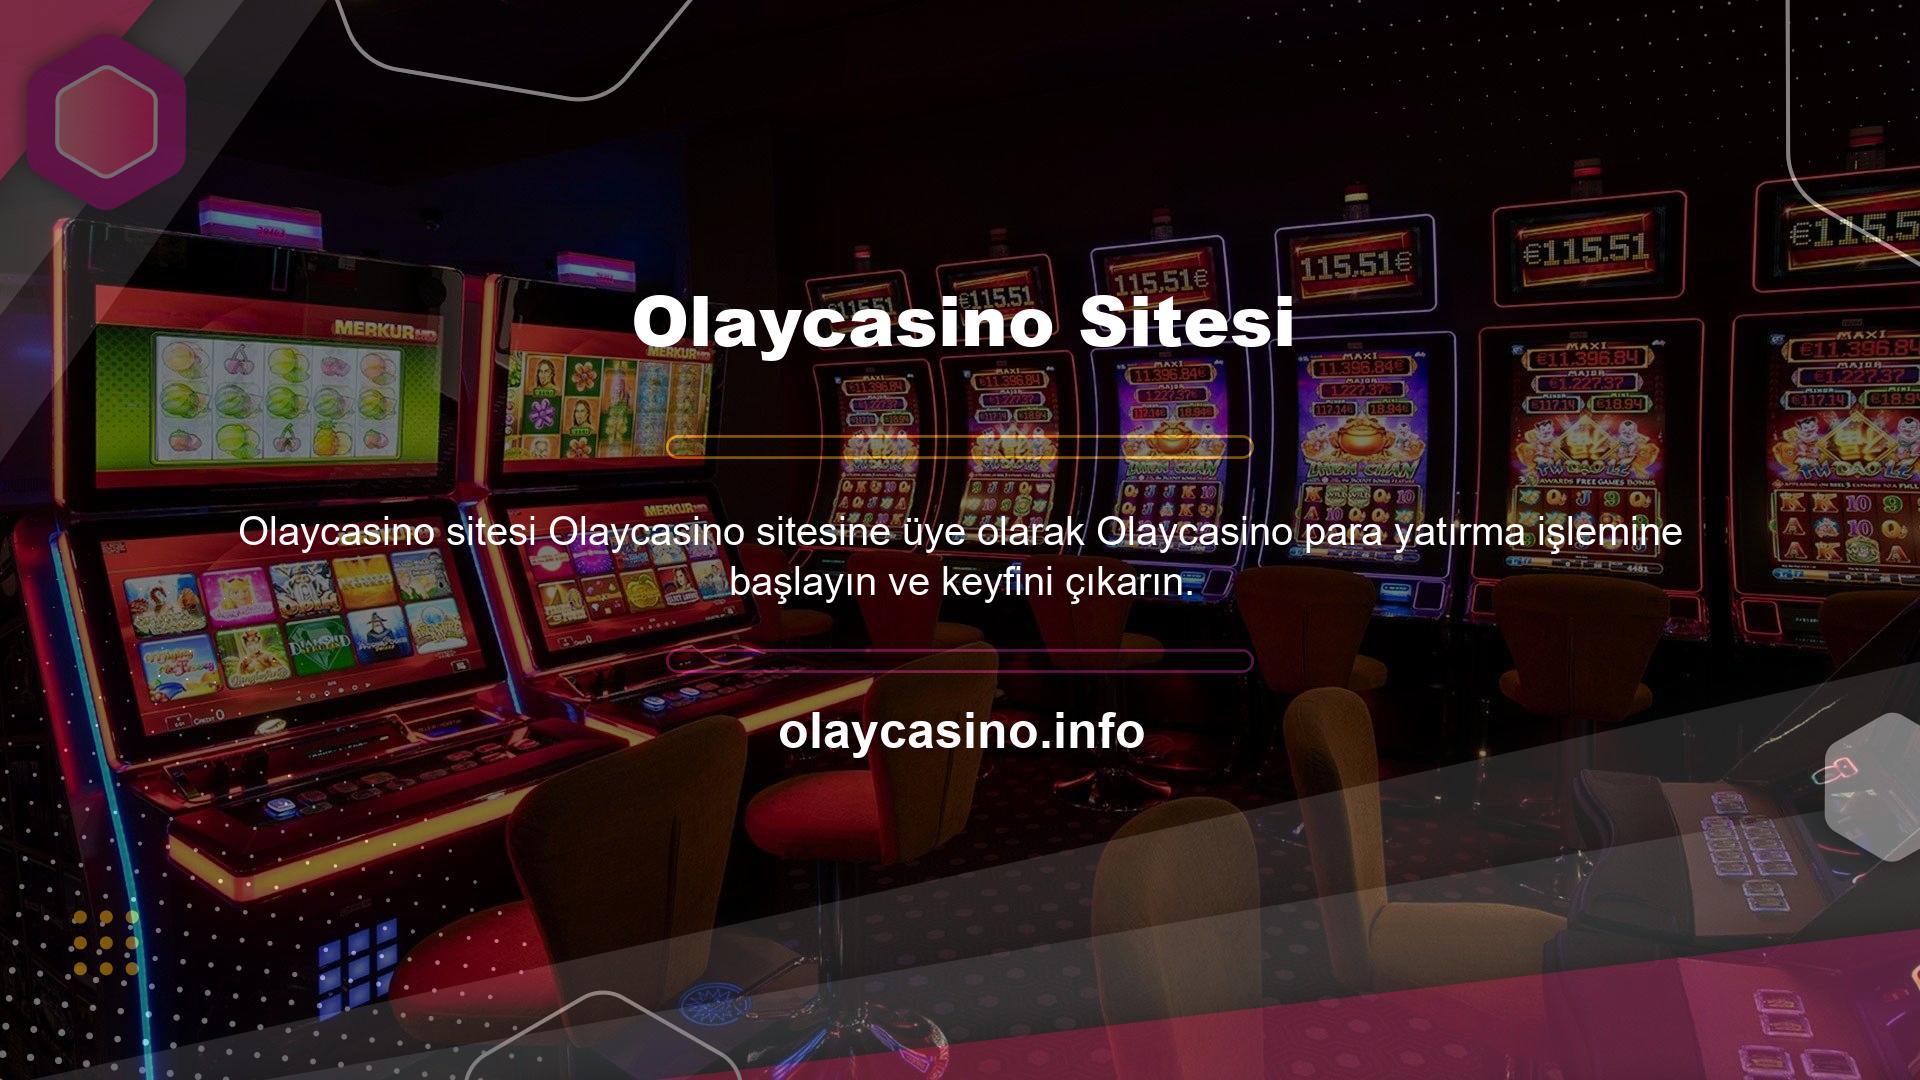 Olaycasino Casino Games, çok çeşitli oyunlar sunar ve ayrıca iyi bir canlı casino oyunları seçkisi vardır